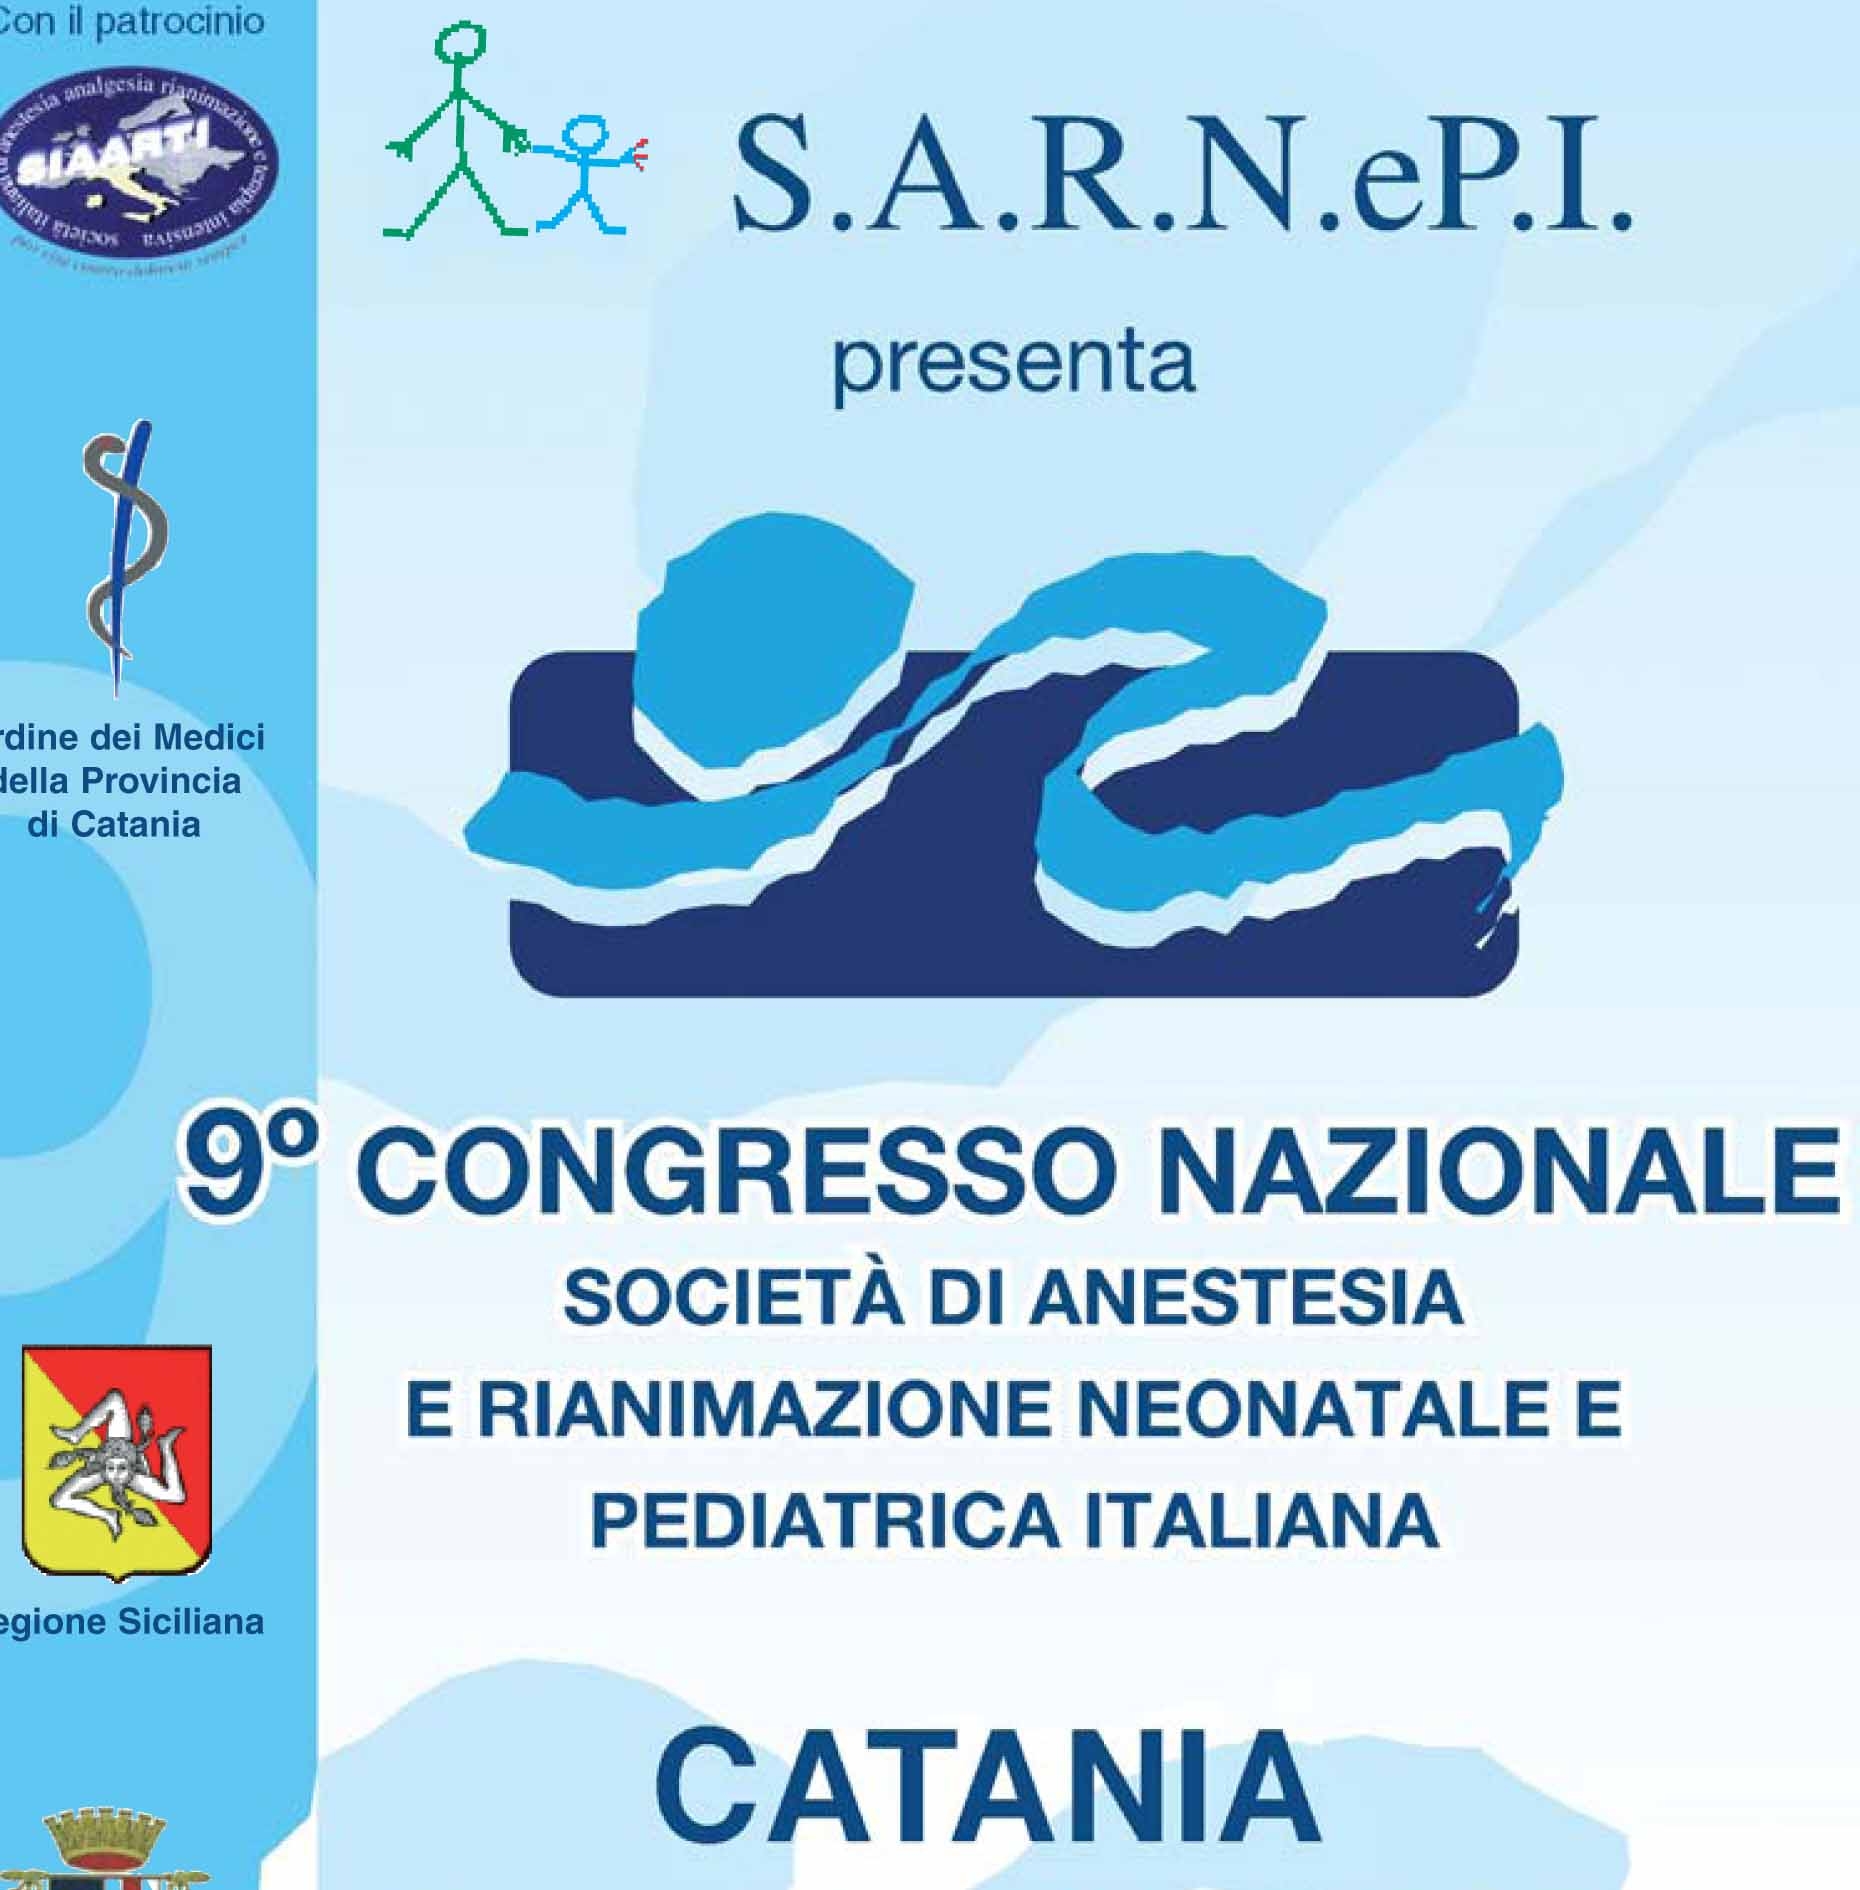 9° Sarnepi Congresso Nazionale società di Anestesia e rianimazione neonatale e pediatrica italiana  